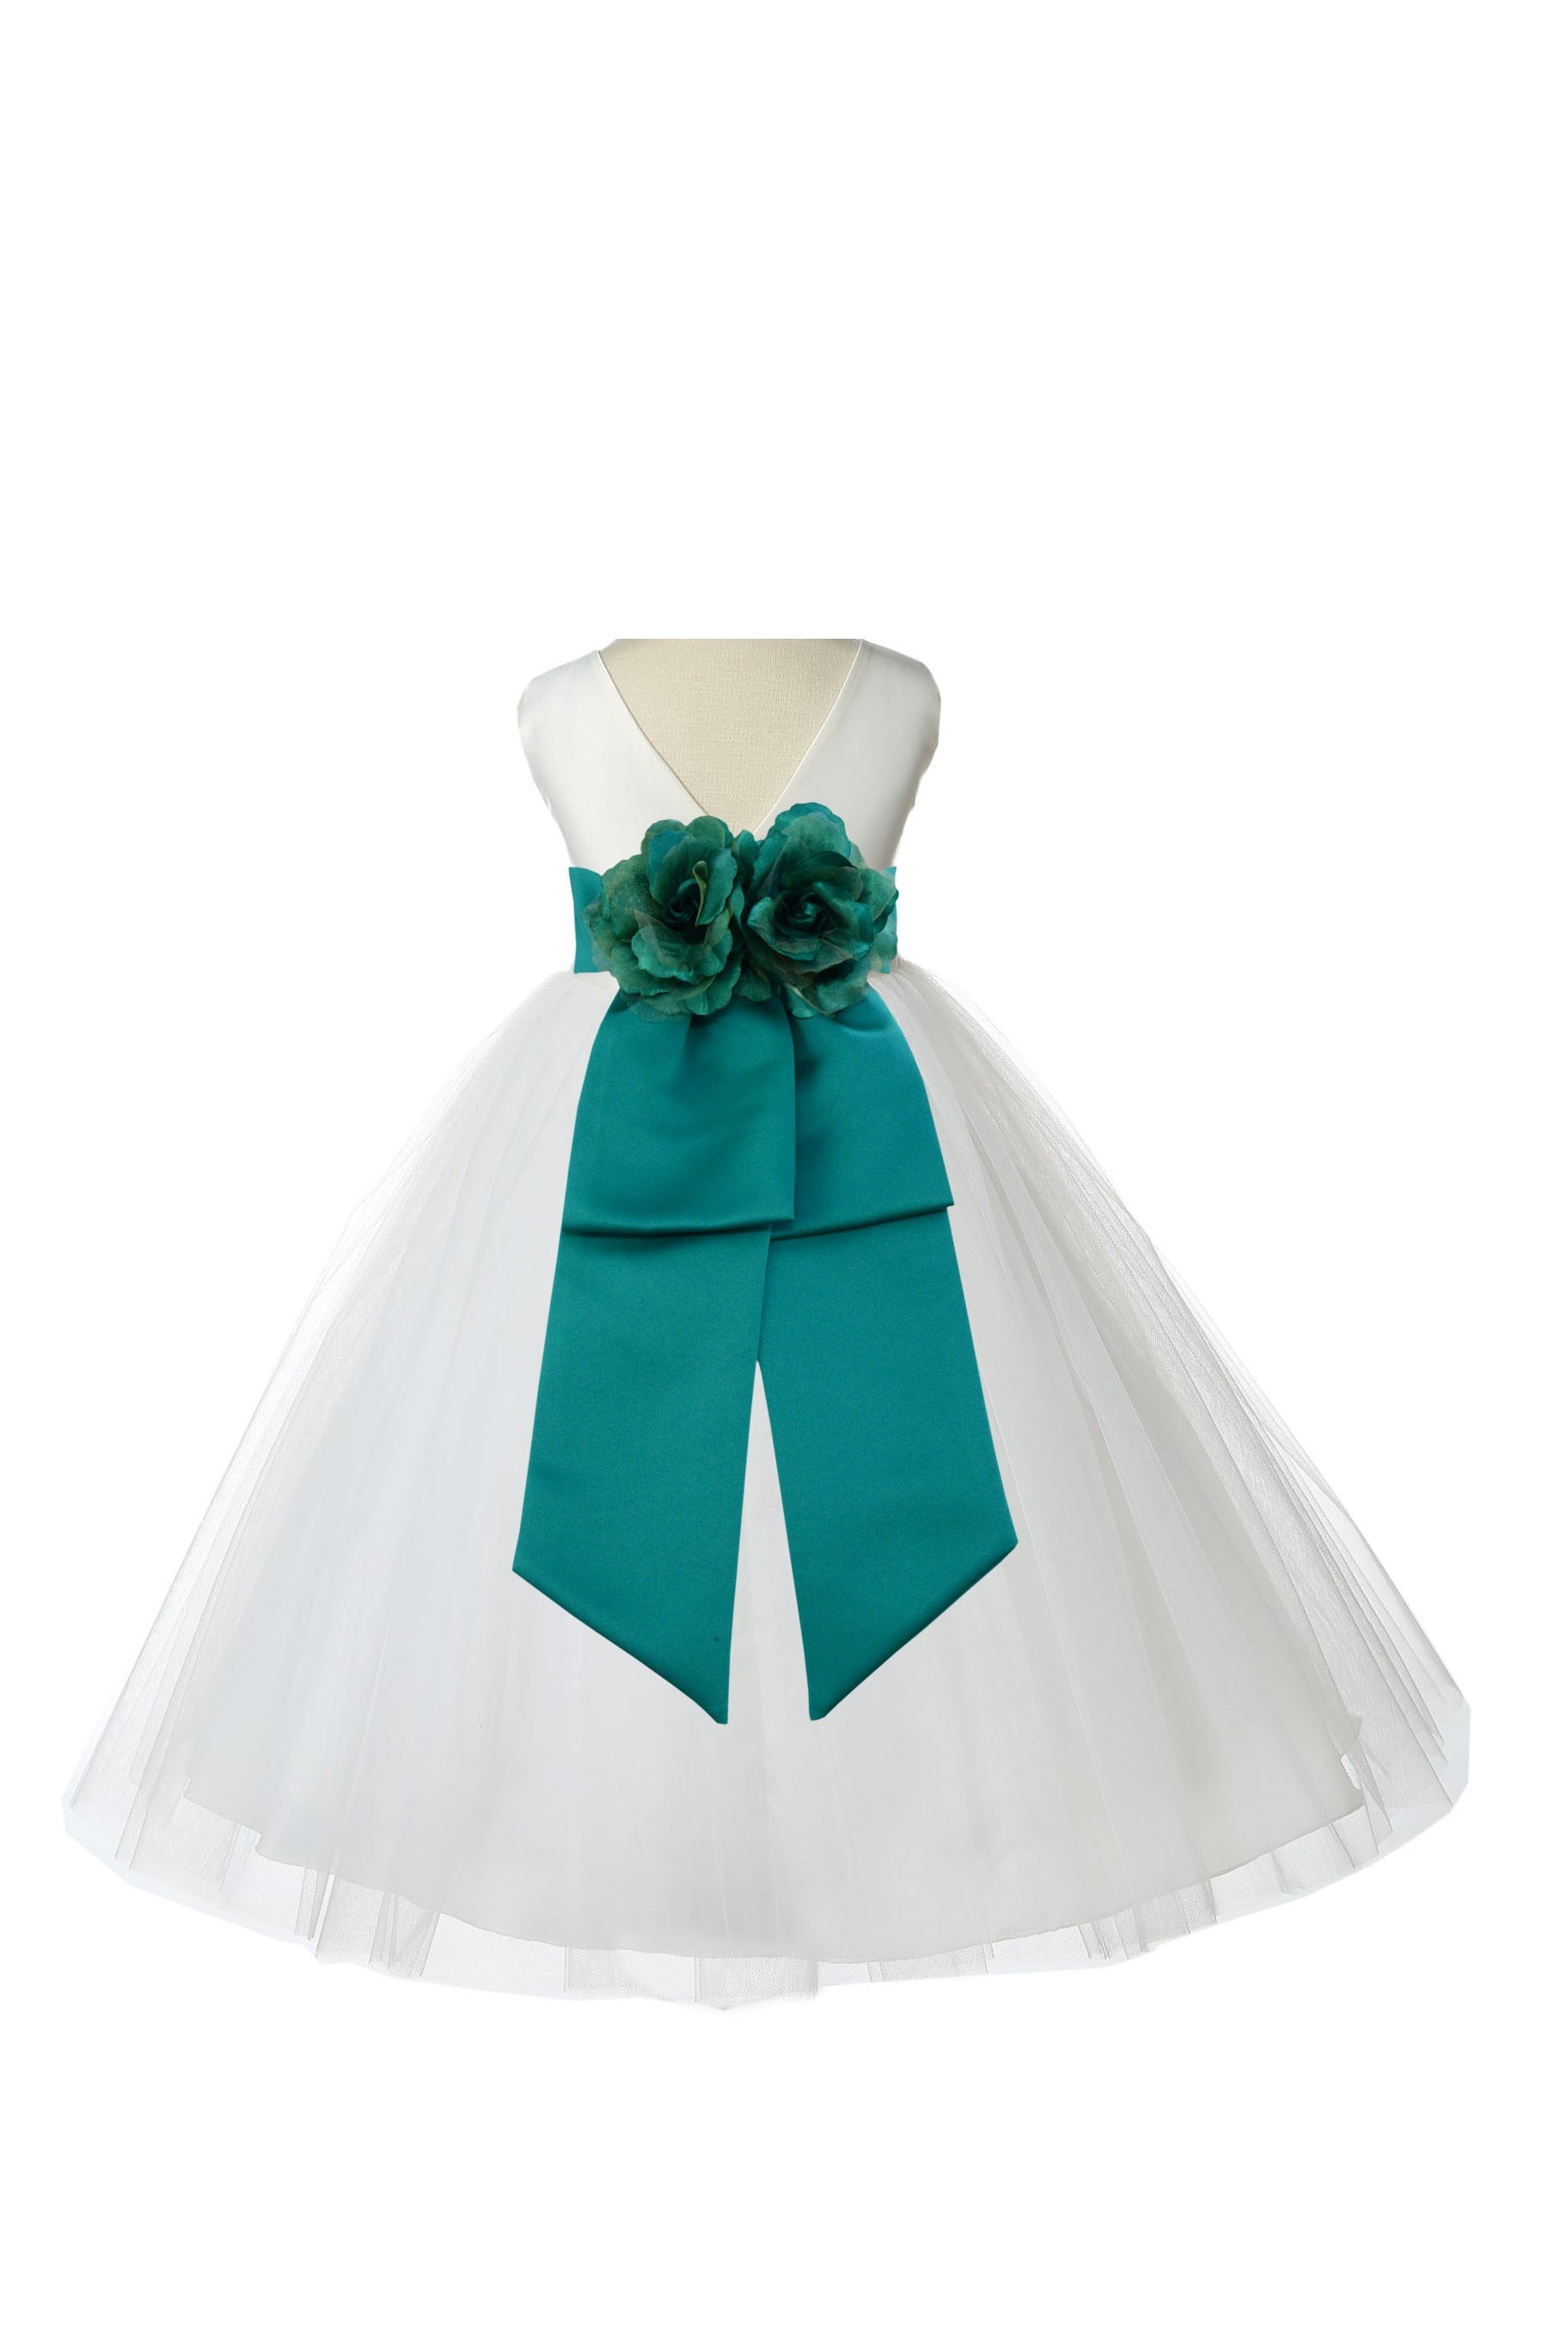 V-Neck Tulle Ivory/Jade Flower Girl Dress Wedding Pageant 108